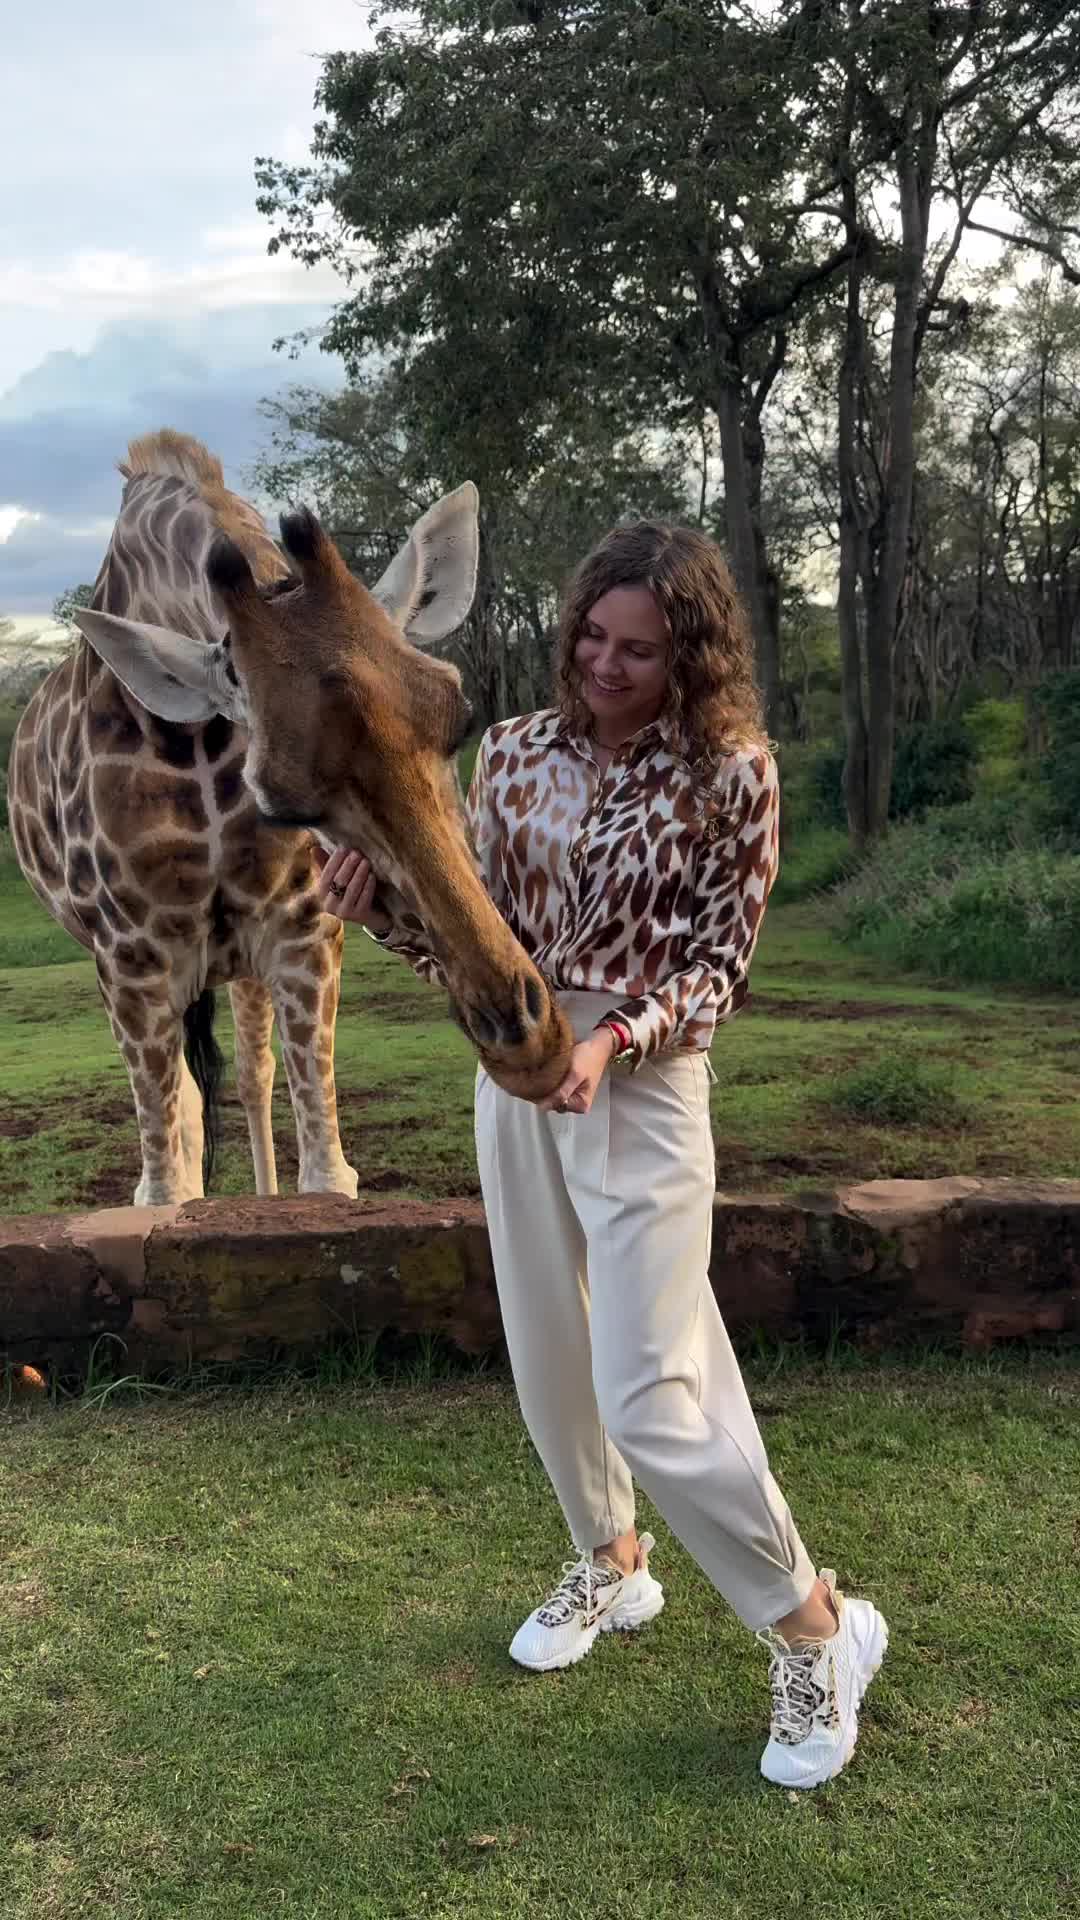 Experience Giraffe Manor in Nairobi, Kenya